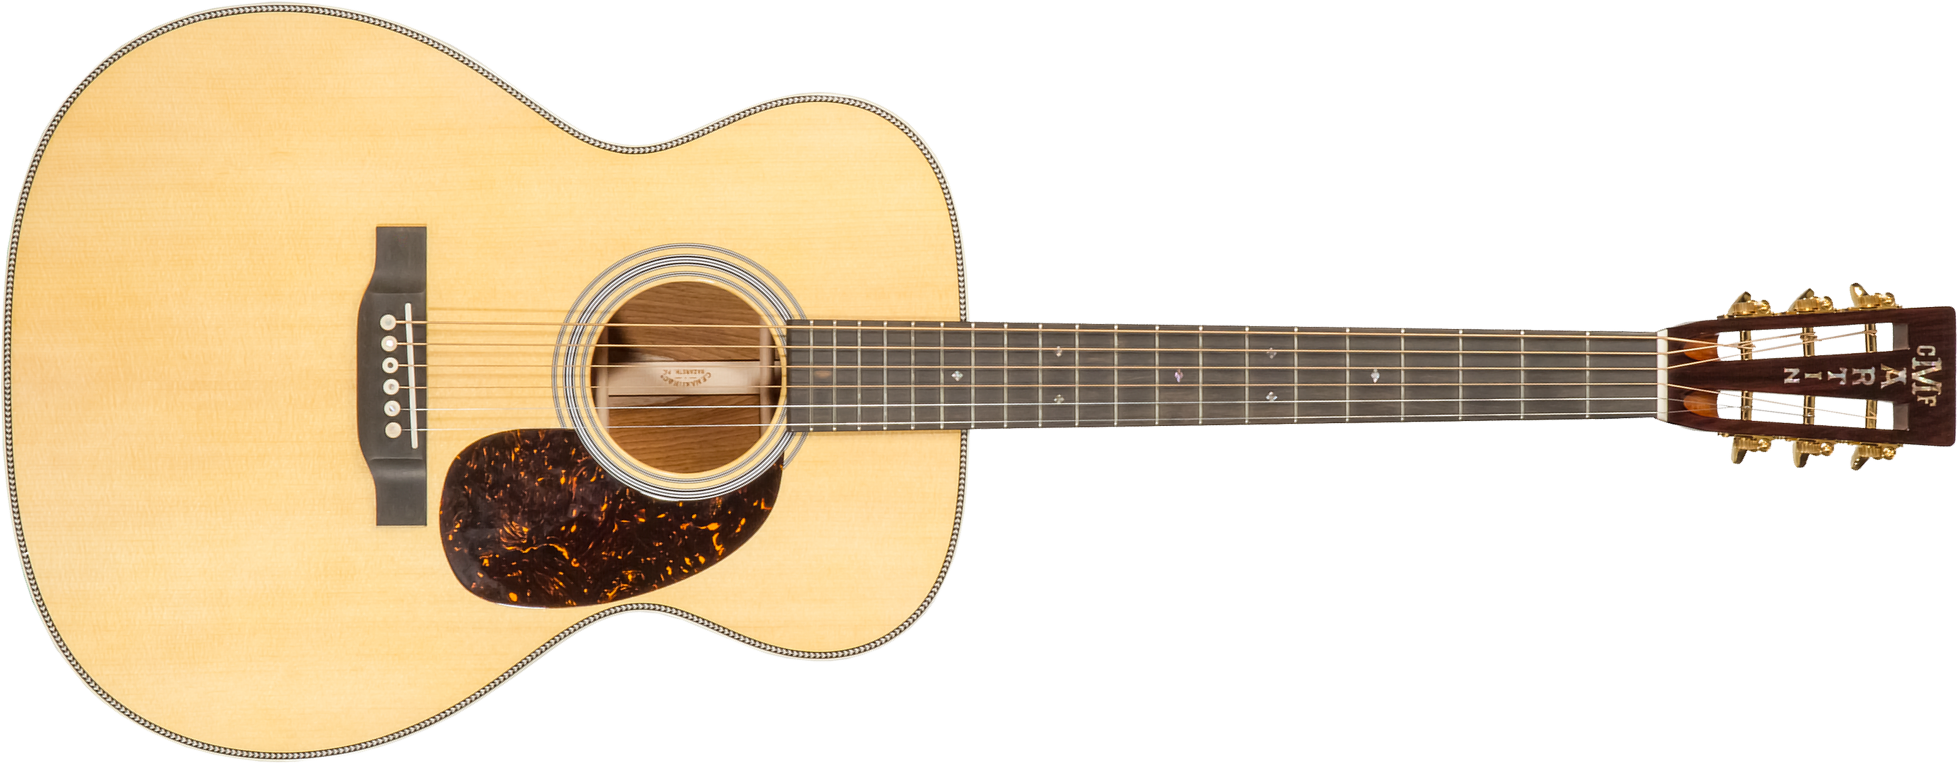 Martin Custom Shop Cs-000-c22034239 000 Epicea Palissandre Eb #2736826 - Natural Aging Toner - Guitare Acoustique - Main picture